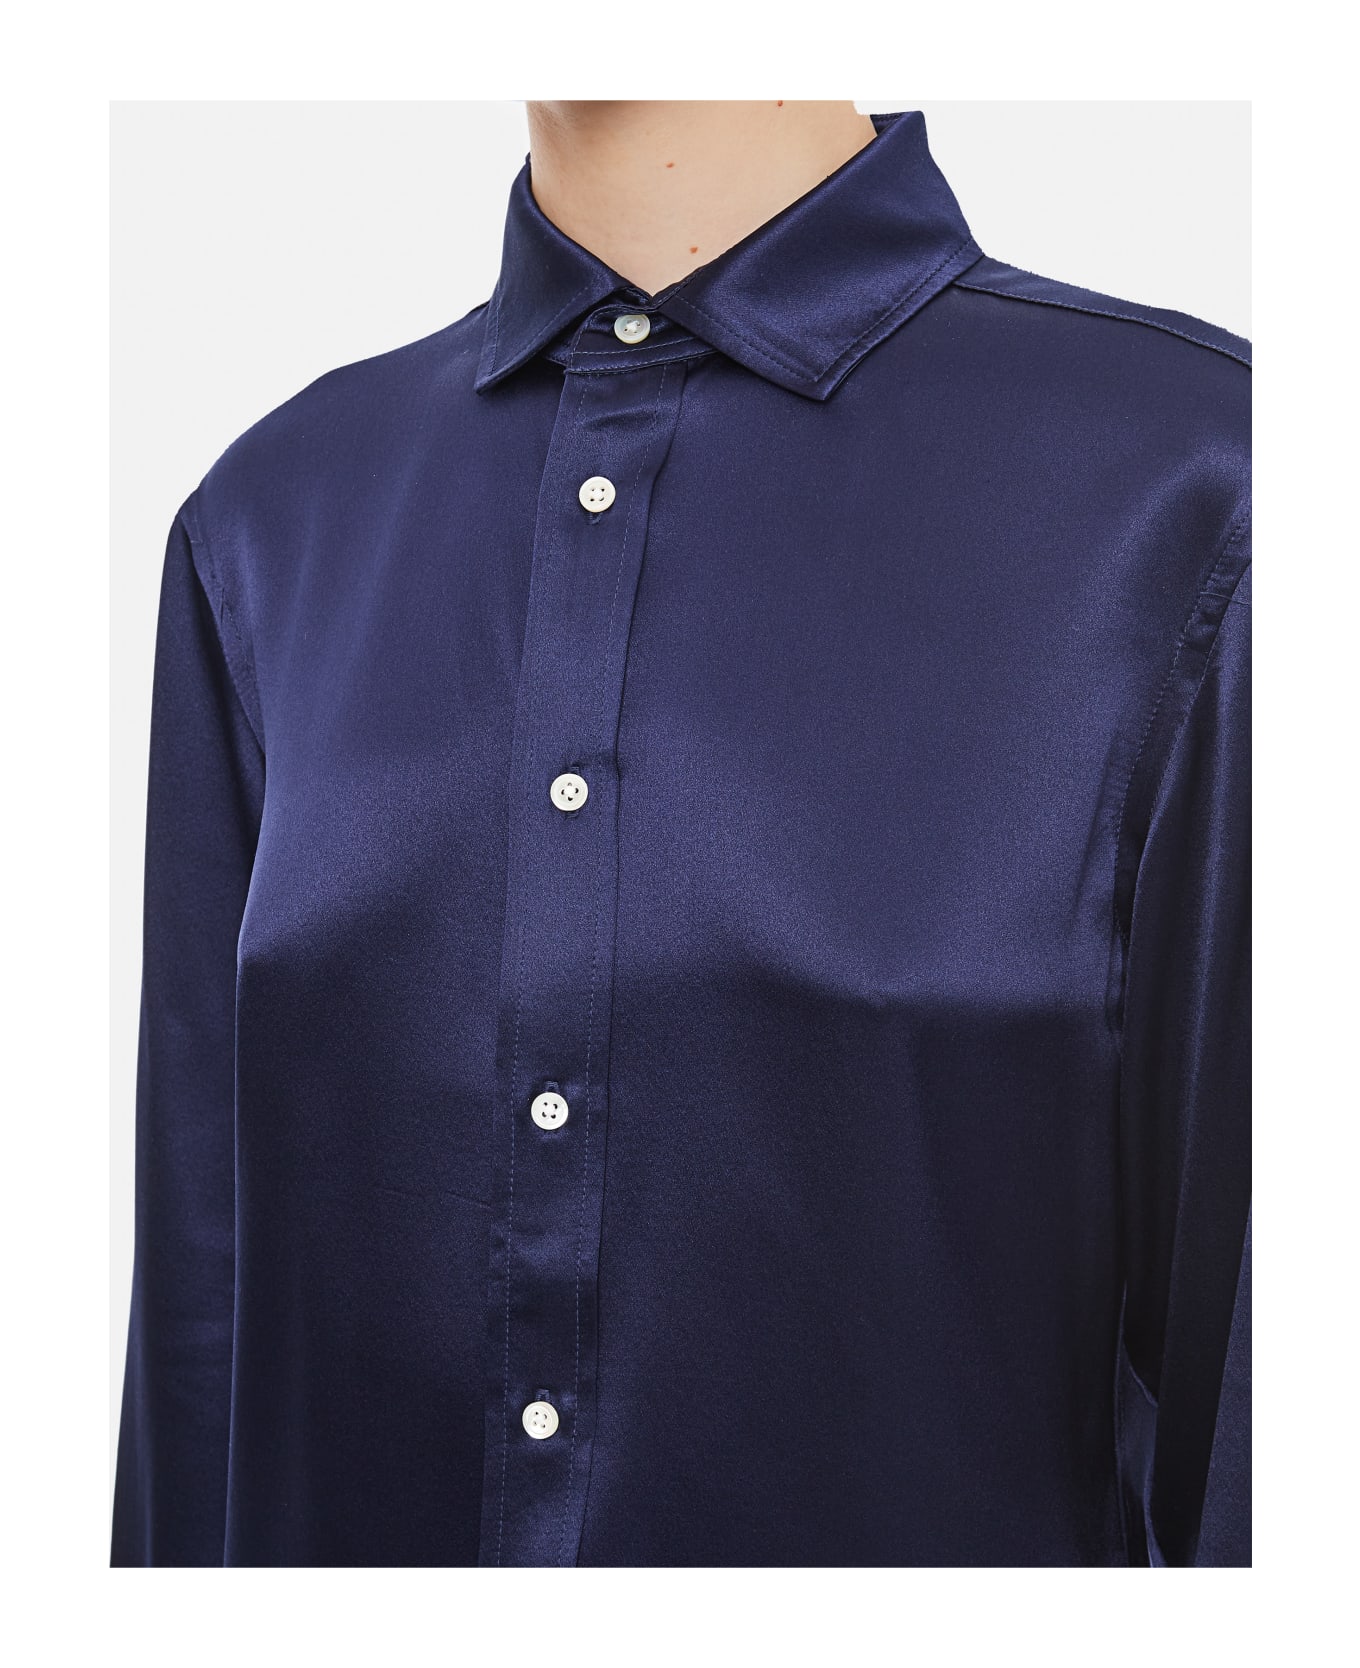 Polo Ralph Lauren Long Sleeve Button Front Silk Shirt - Newport Navy